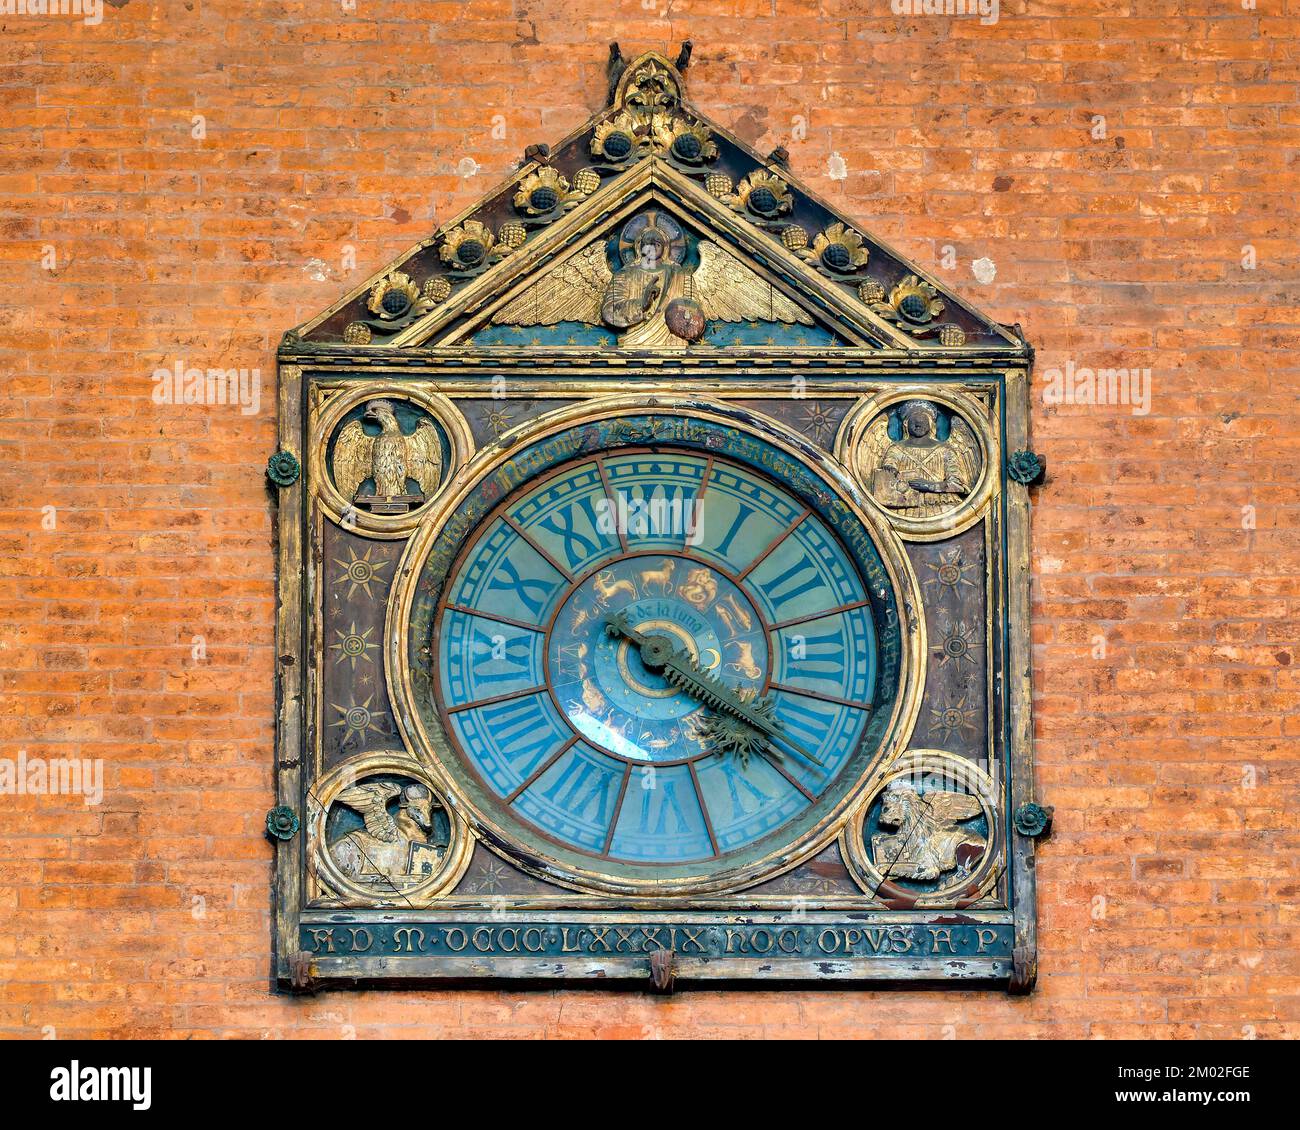 The clock of the Palazzo della Mercanzia, Bologna, Italy Stock Photo